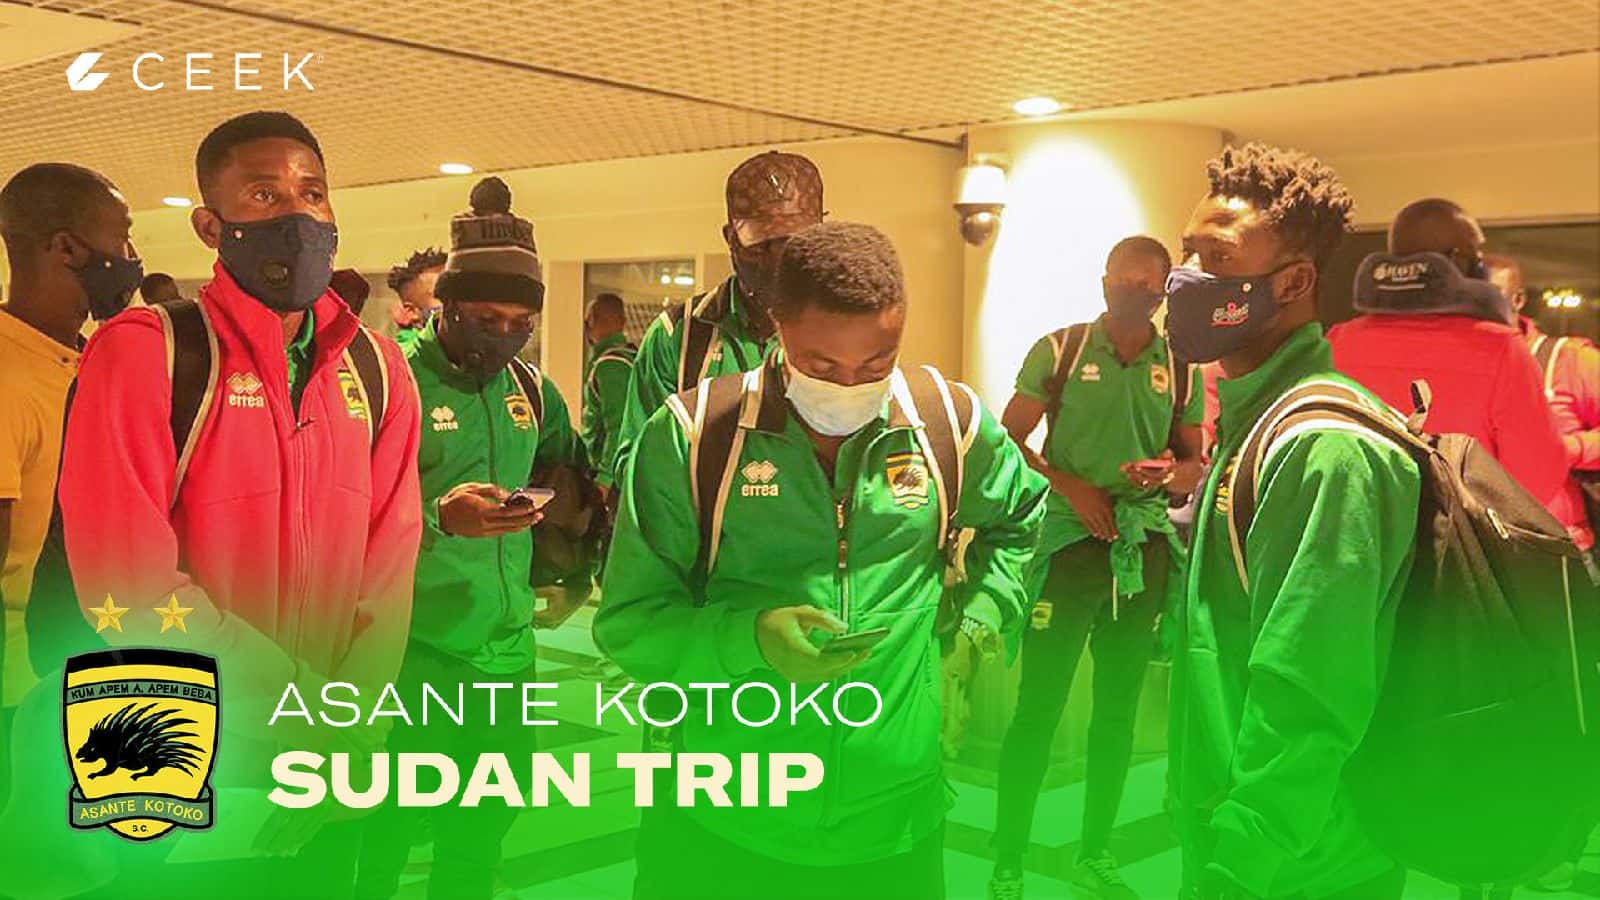 Asante Kotoko Al Hilal vrs Asante Kotoko - Sudan Trip